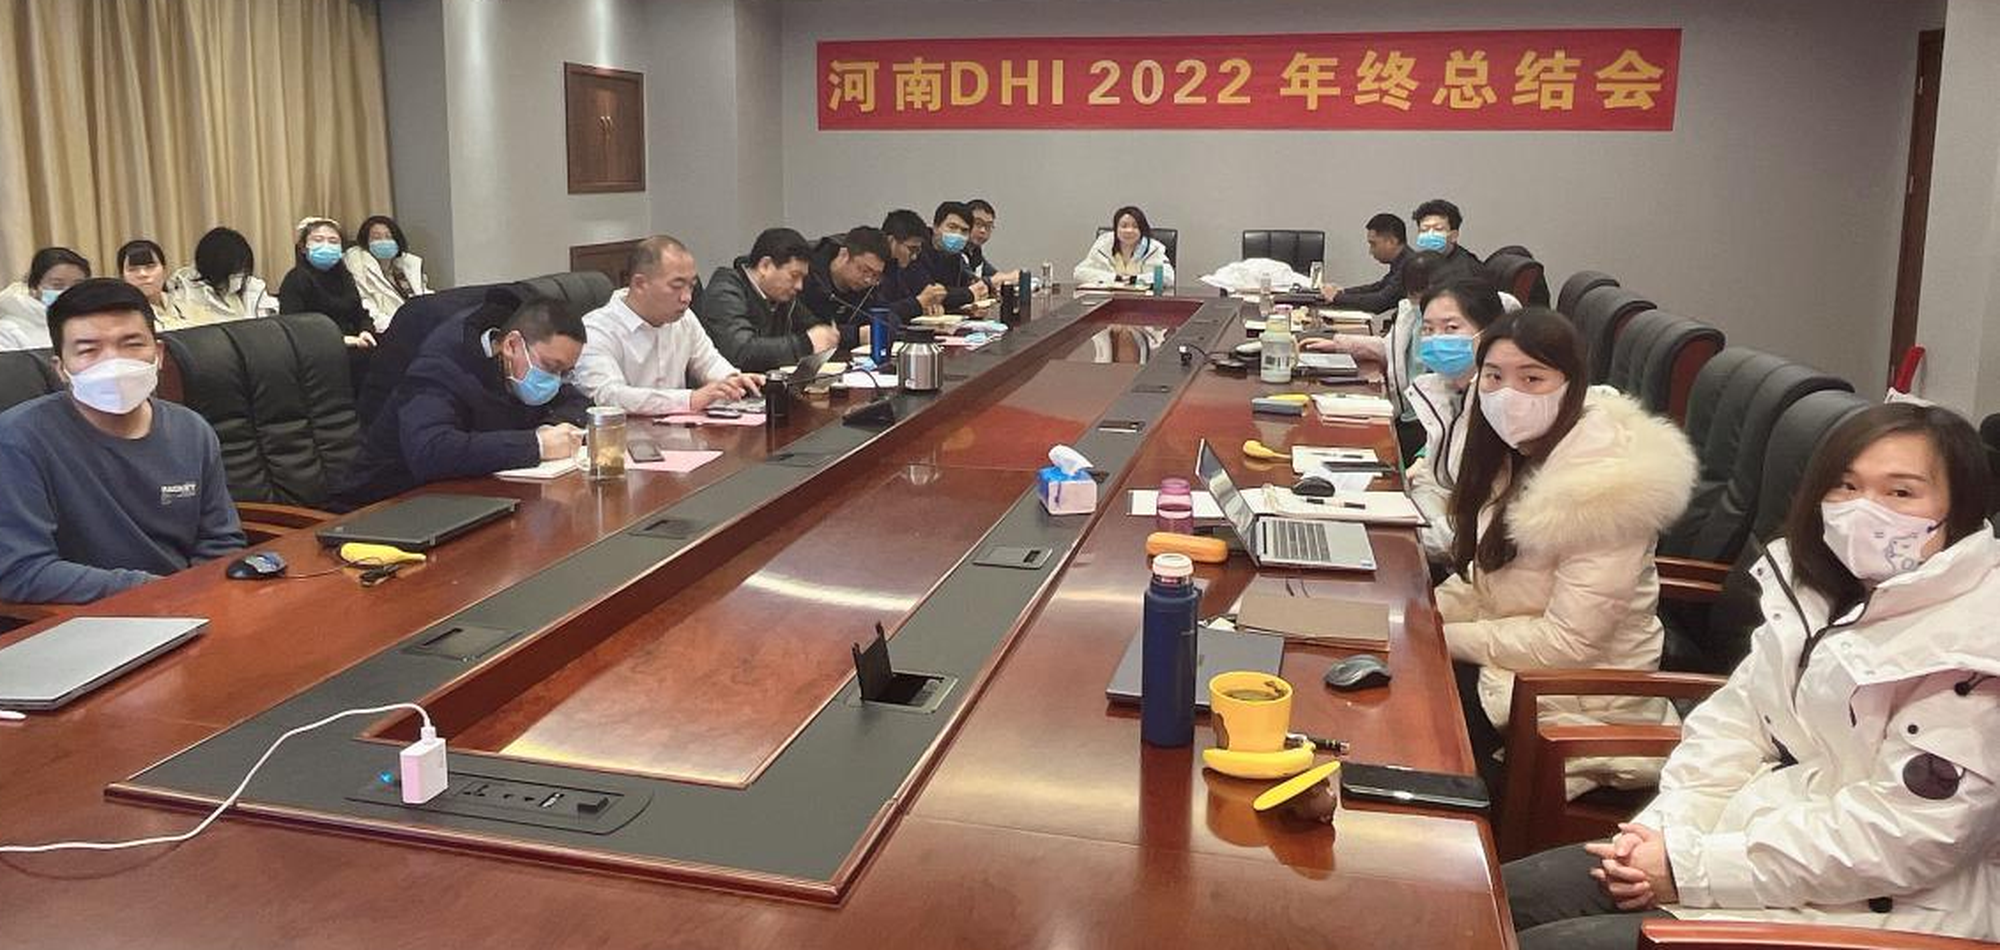 河南DHI召开2022年终总结会暨新年趣味运动会 1.14